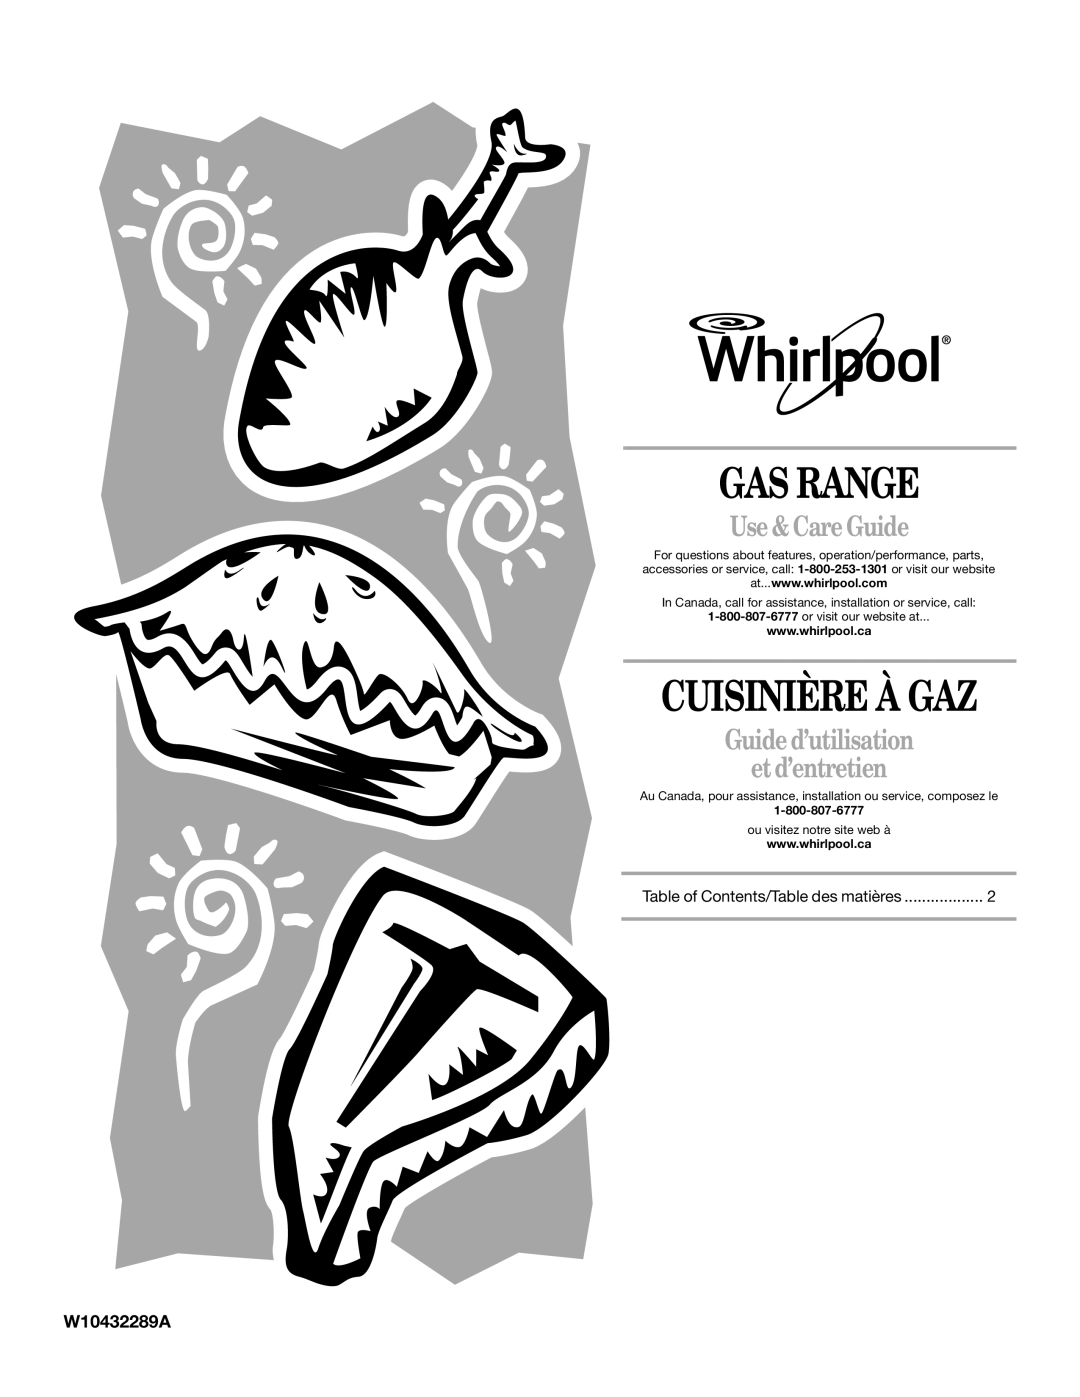 Whirlpool GW399LXUS manual Gas Range, Cuisinière À Gaz, Use & Care Guide, Guide d’utilisation et d’entretien, W10432289A 